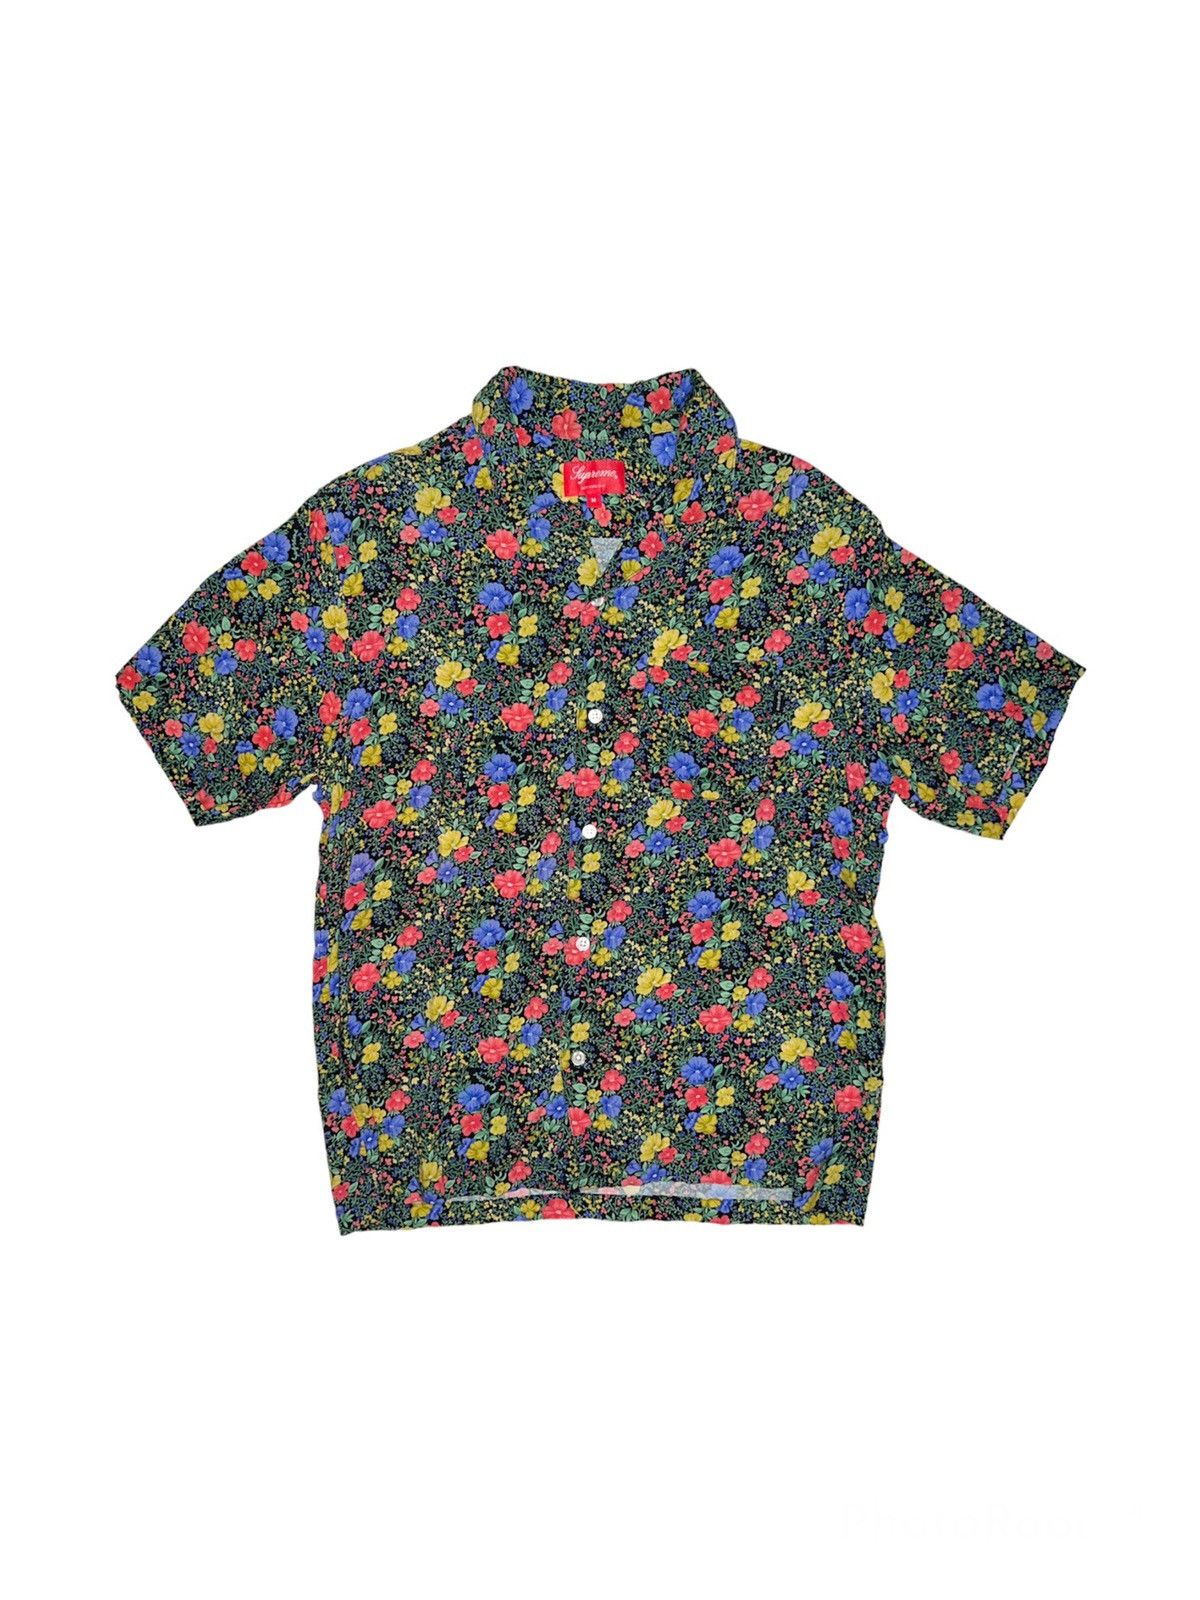 Supreme Floral Rayon Shirt | Grailed